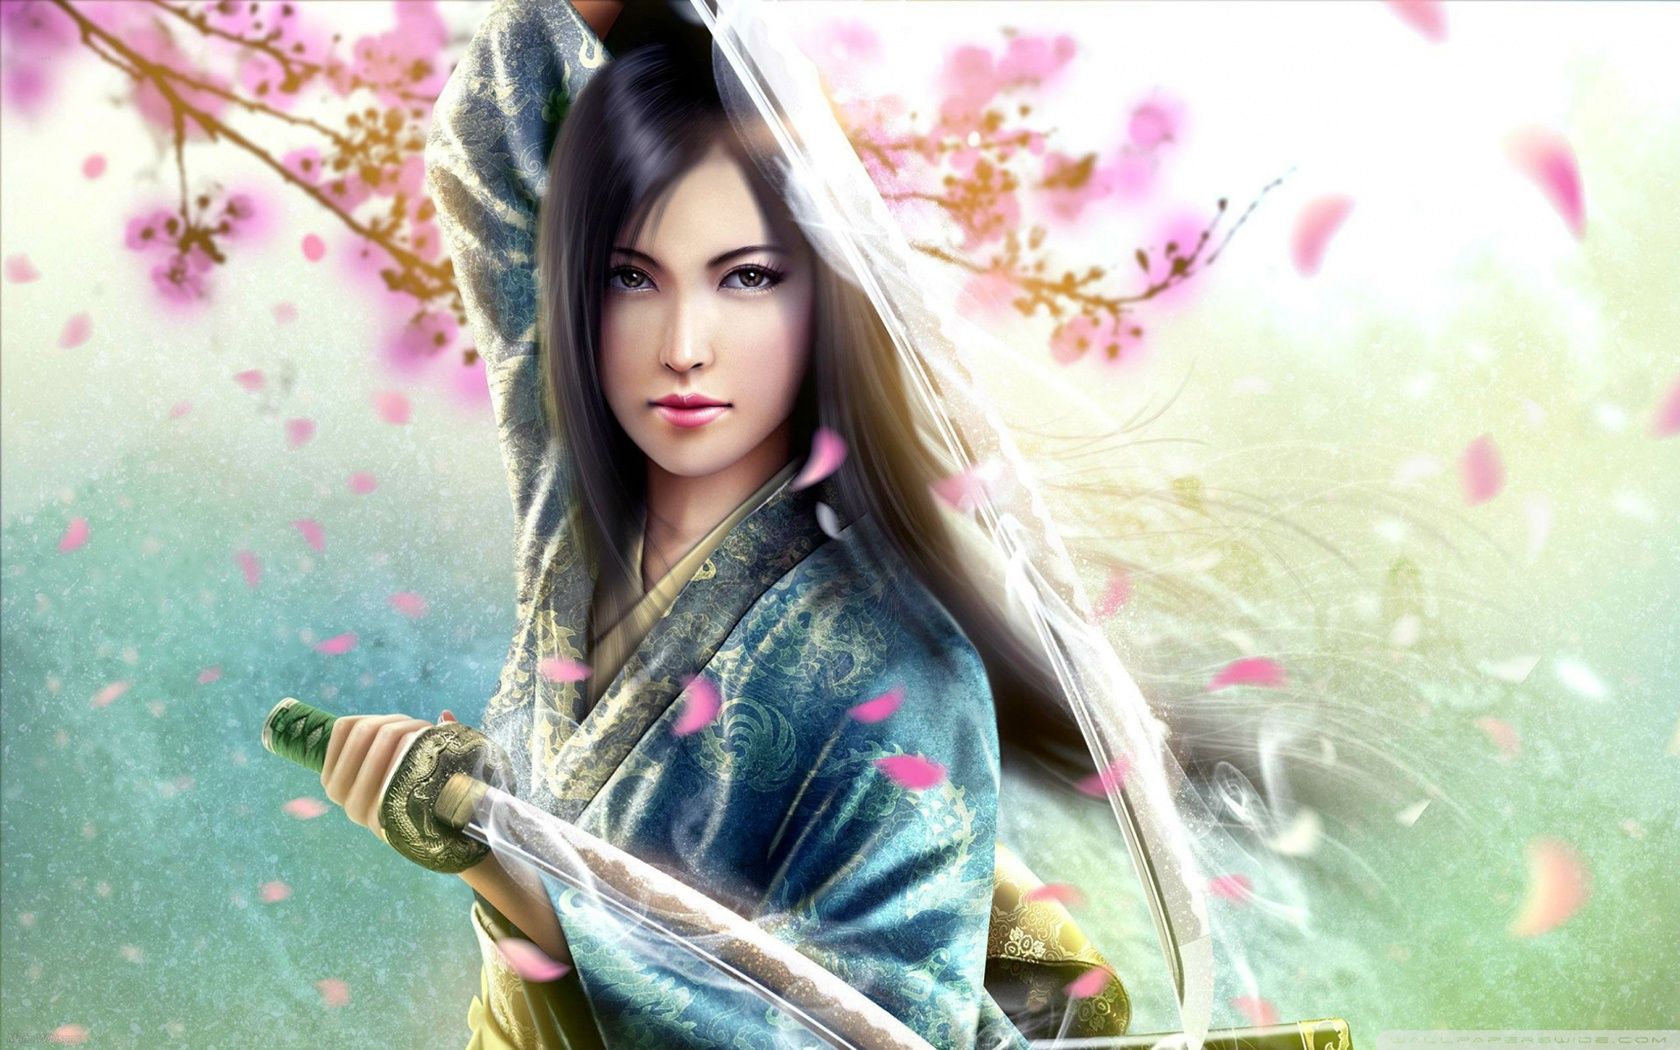 Female Samurai Wallpapers